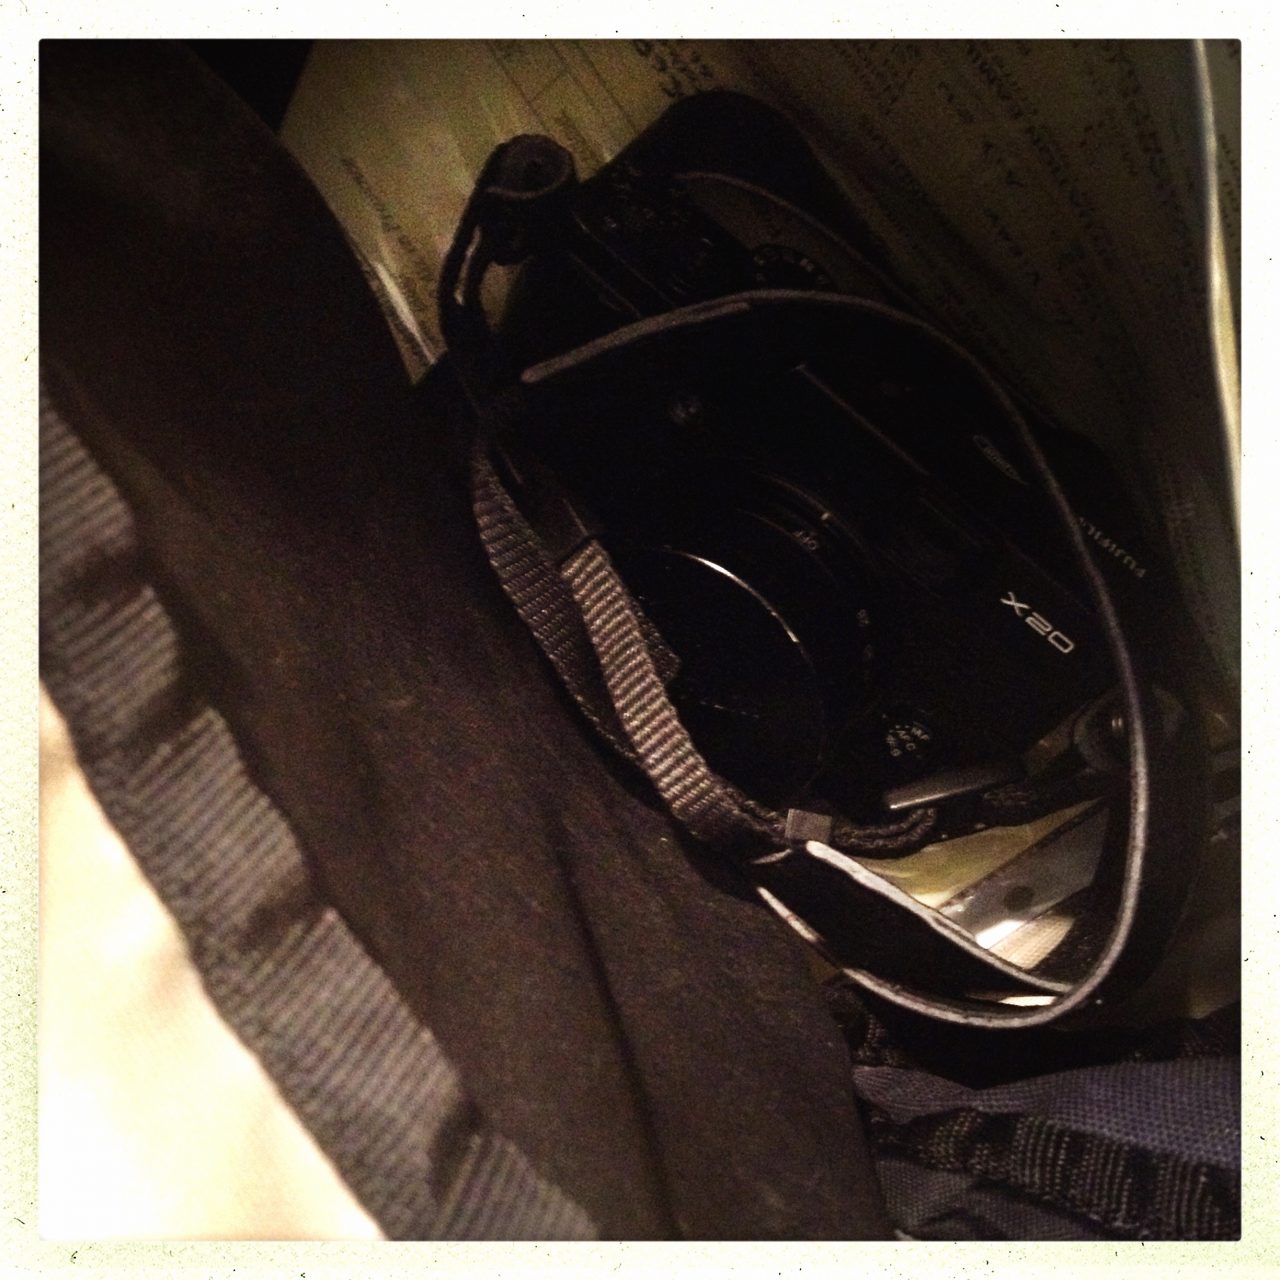 Mon Fuji X20 au fond de mon sac